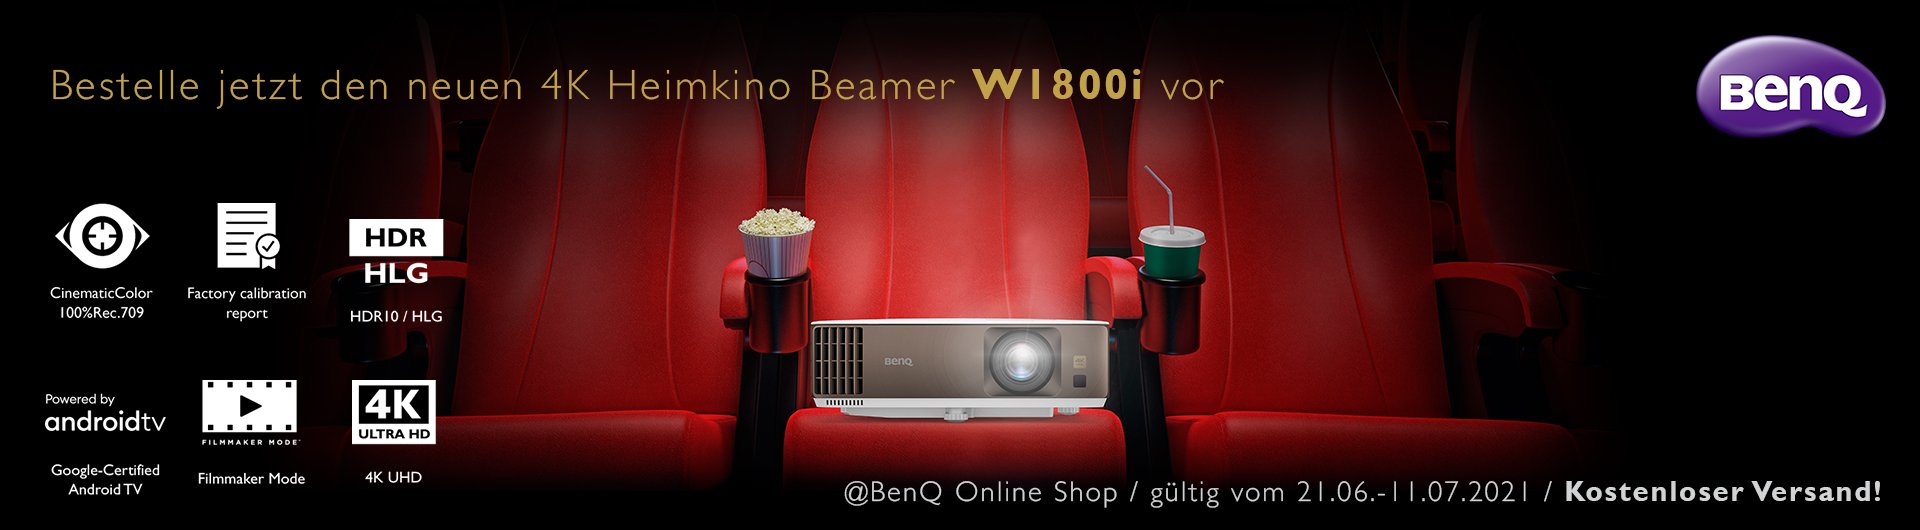 Bestelle jetzt den neuen 4K Heimkino Beamer W1800i von BenQ vor